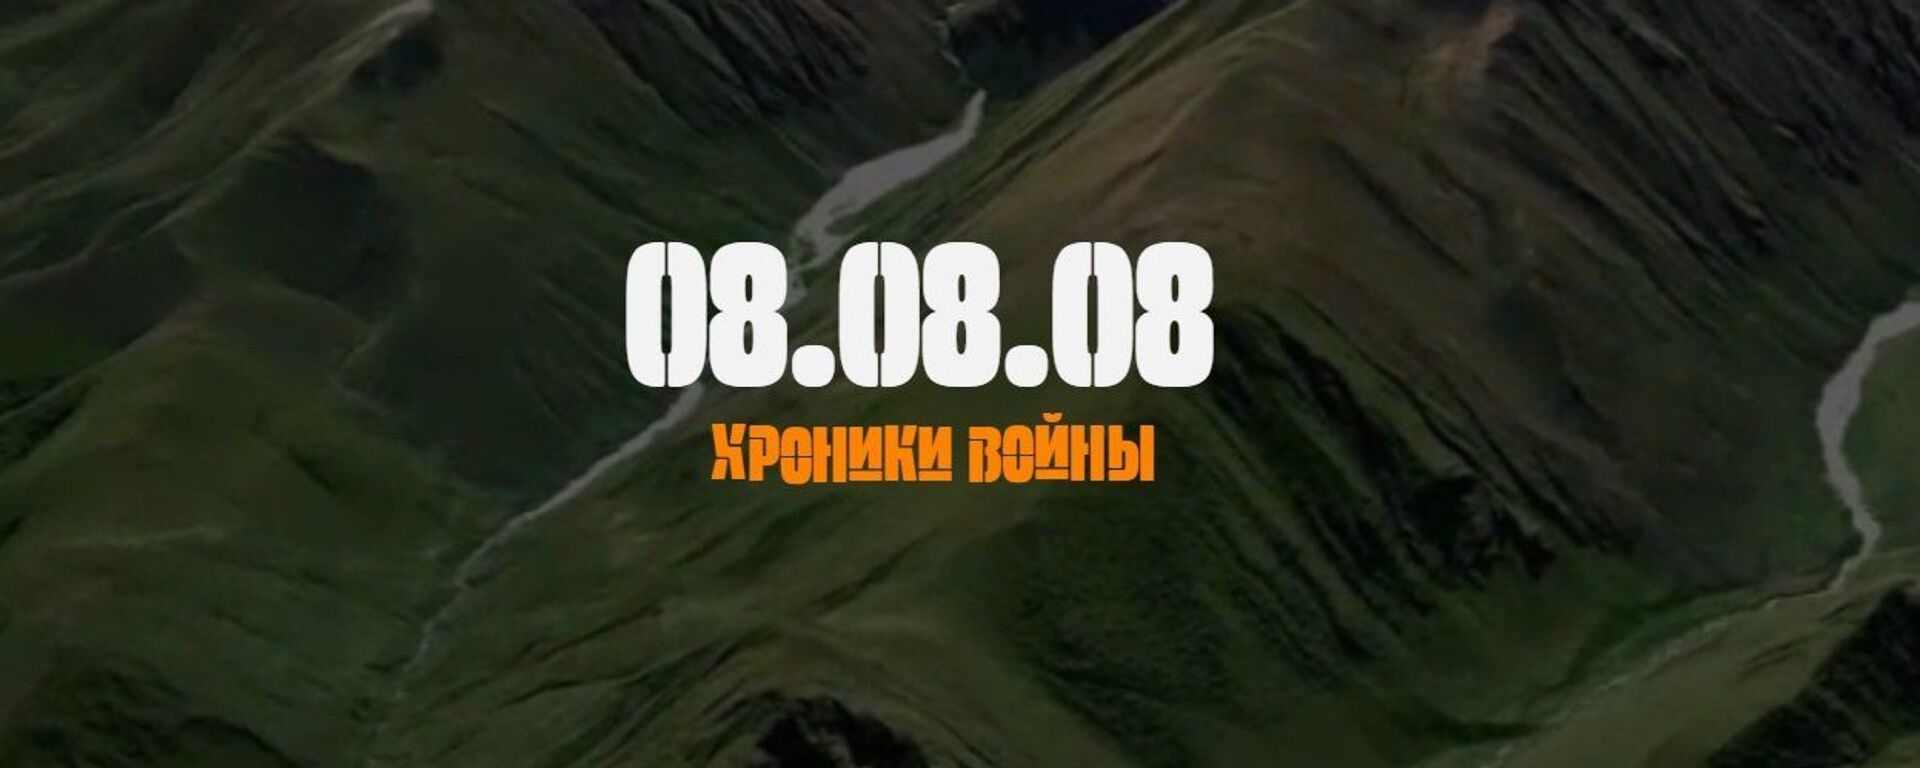 Хроники войны 08.08.08 - Sputnik Южная Осетия, 1920, 08.08.2022